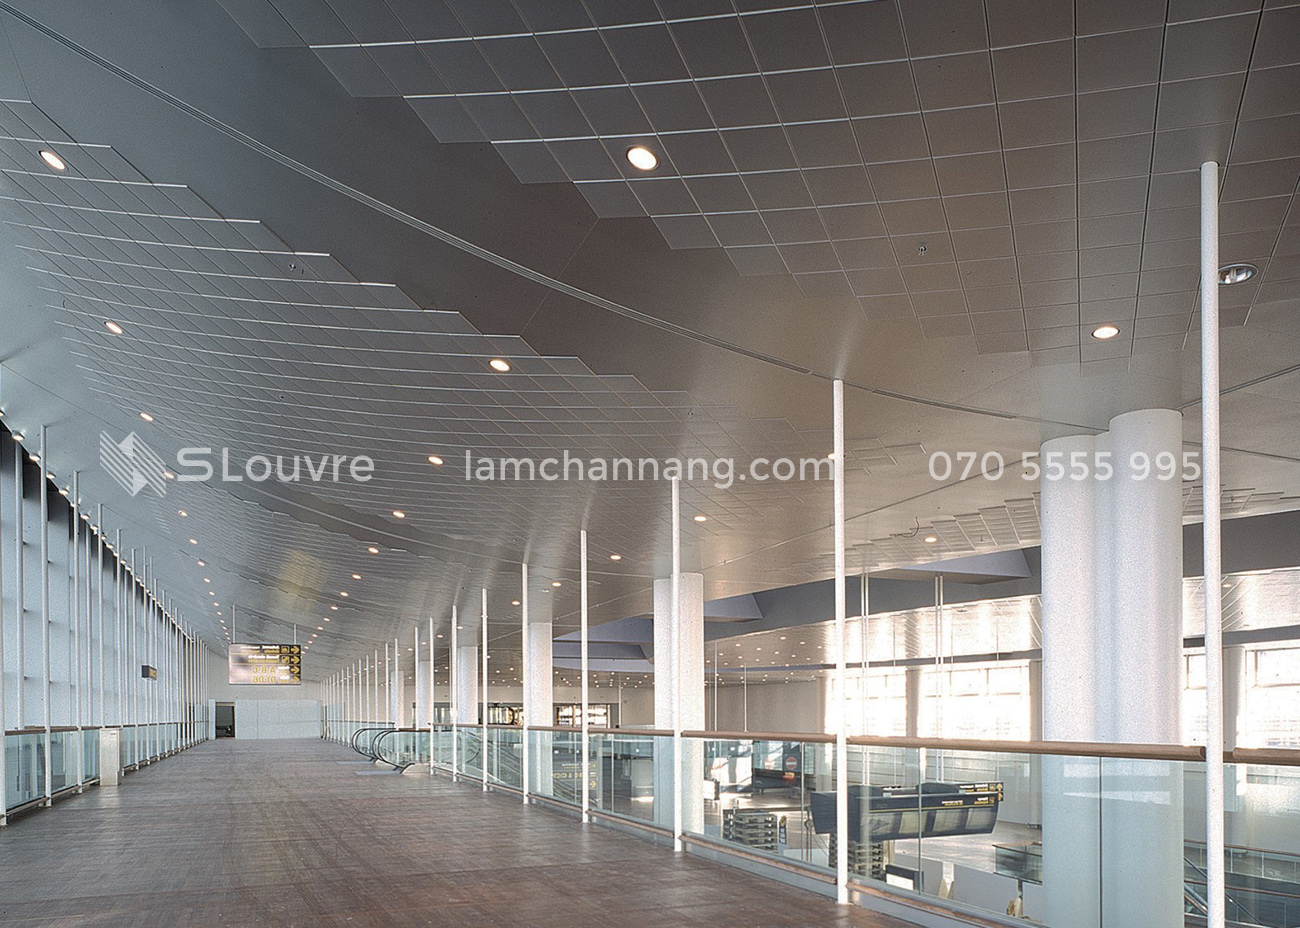 tran-nhom-san-bay-airport-aluminium-ceiling-13